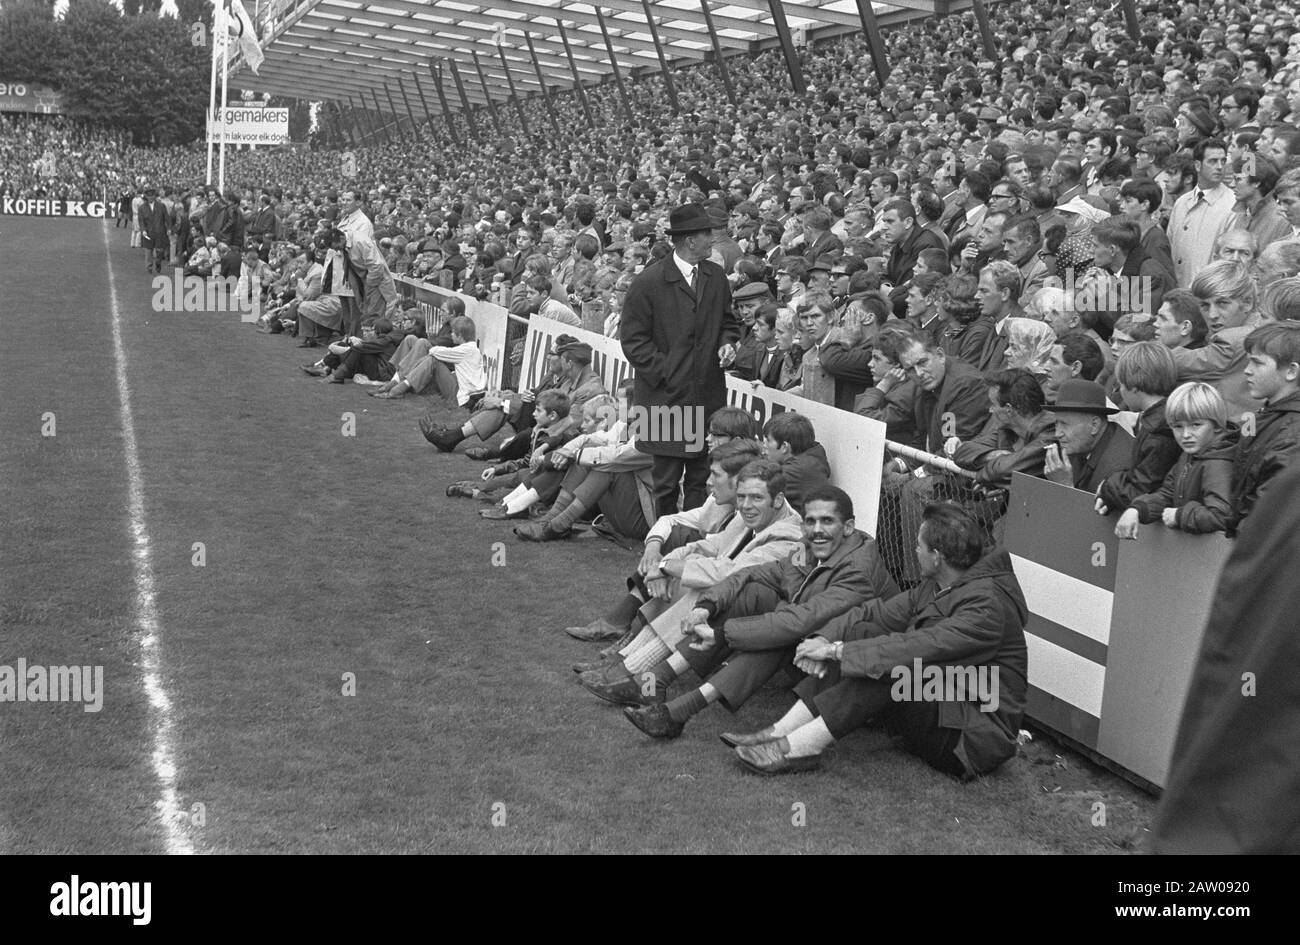 NAC against Feyenoord 0-4 Date: August 24, 1969 Keywords: sports, bleachers, soccer Institution Name: Feyenoord Stock Photo